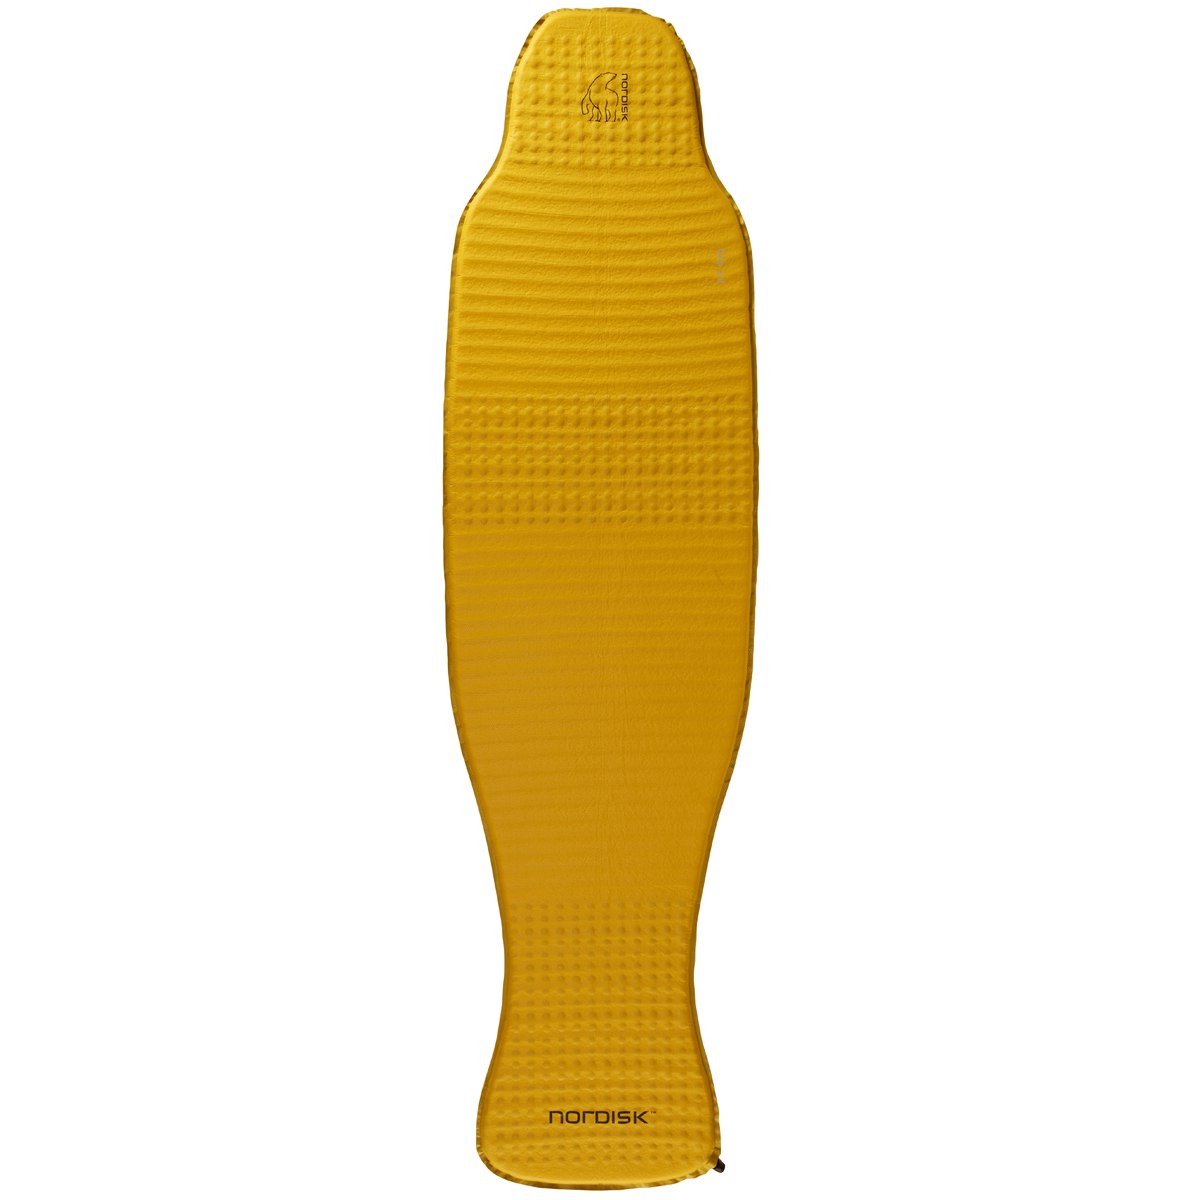 Produktbild von Nordisk Grip 3.8 Large Isomatte - Mustard Yellow/Black